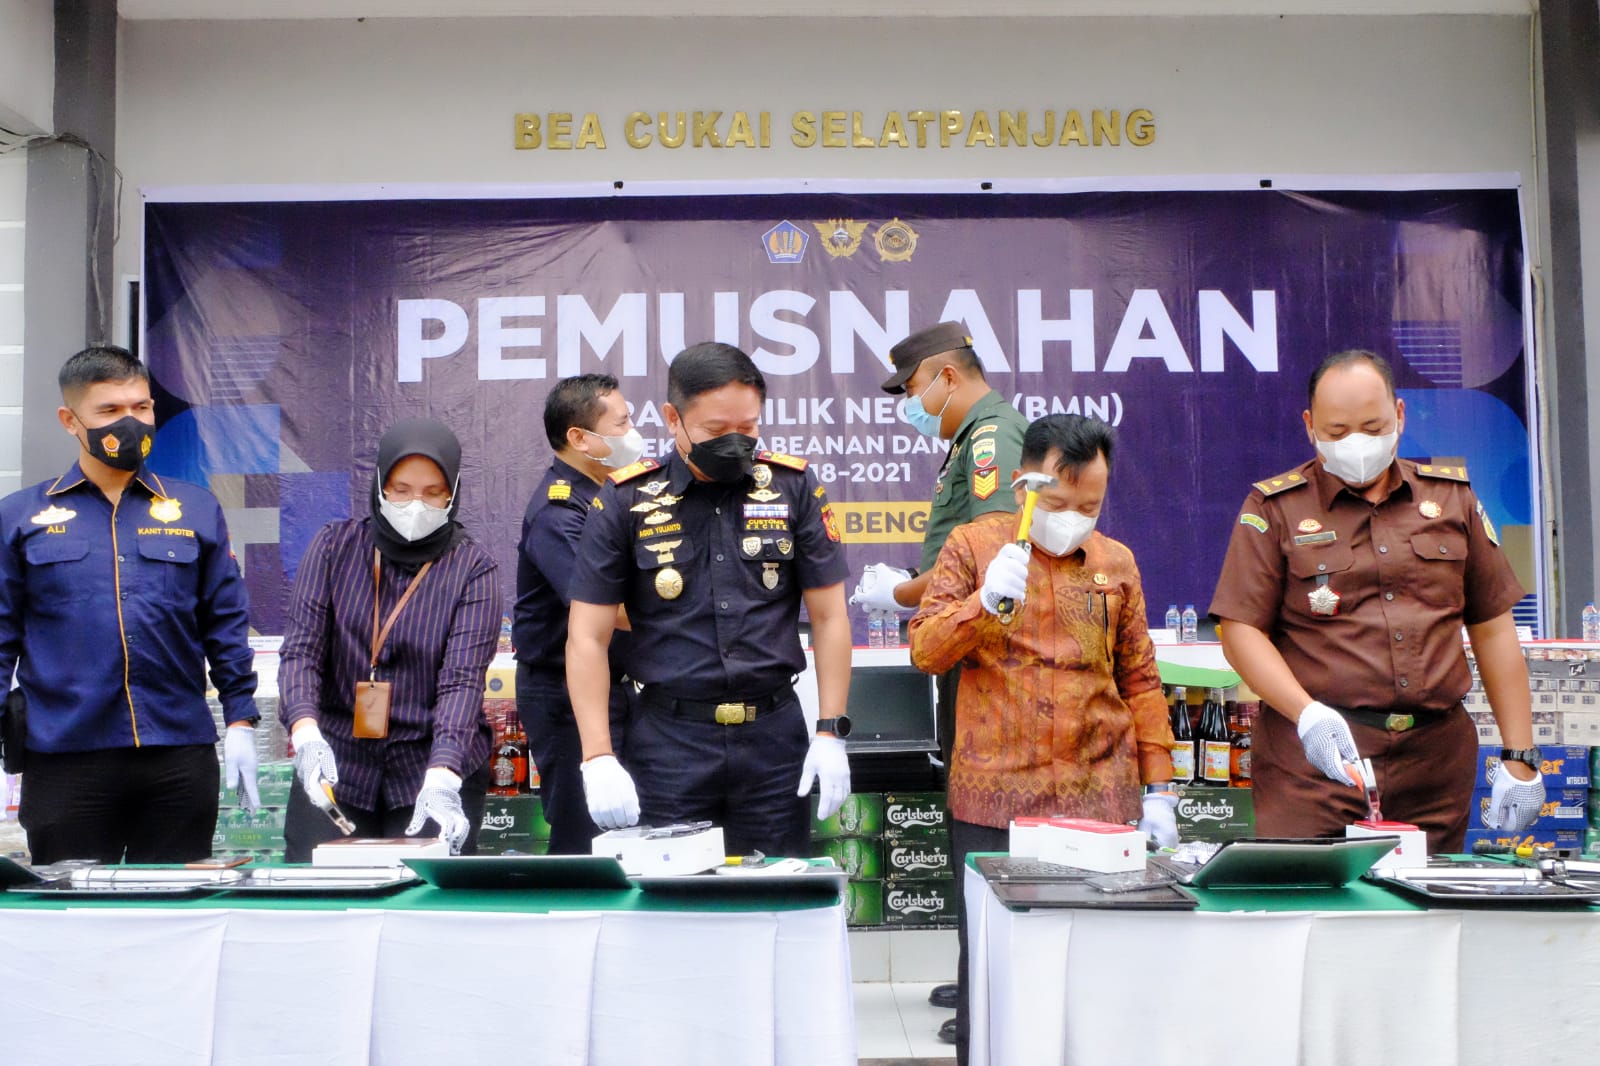 KPPBC Bengkalis Musnahkan Barang Senilai Rp 3,46 Miliar di Selatpanjang